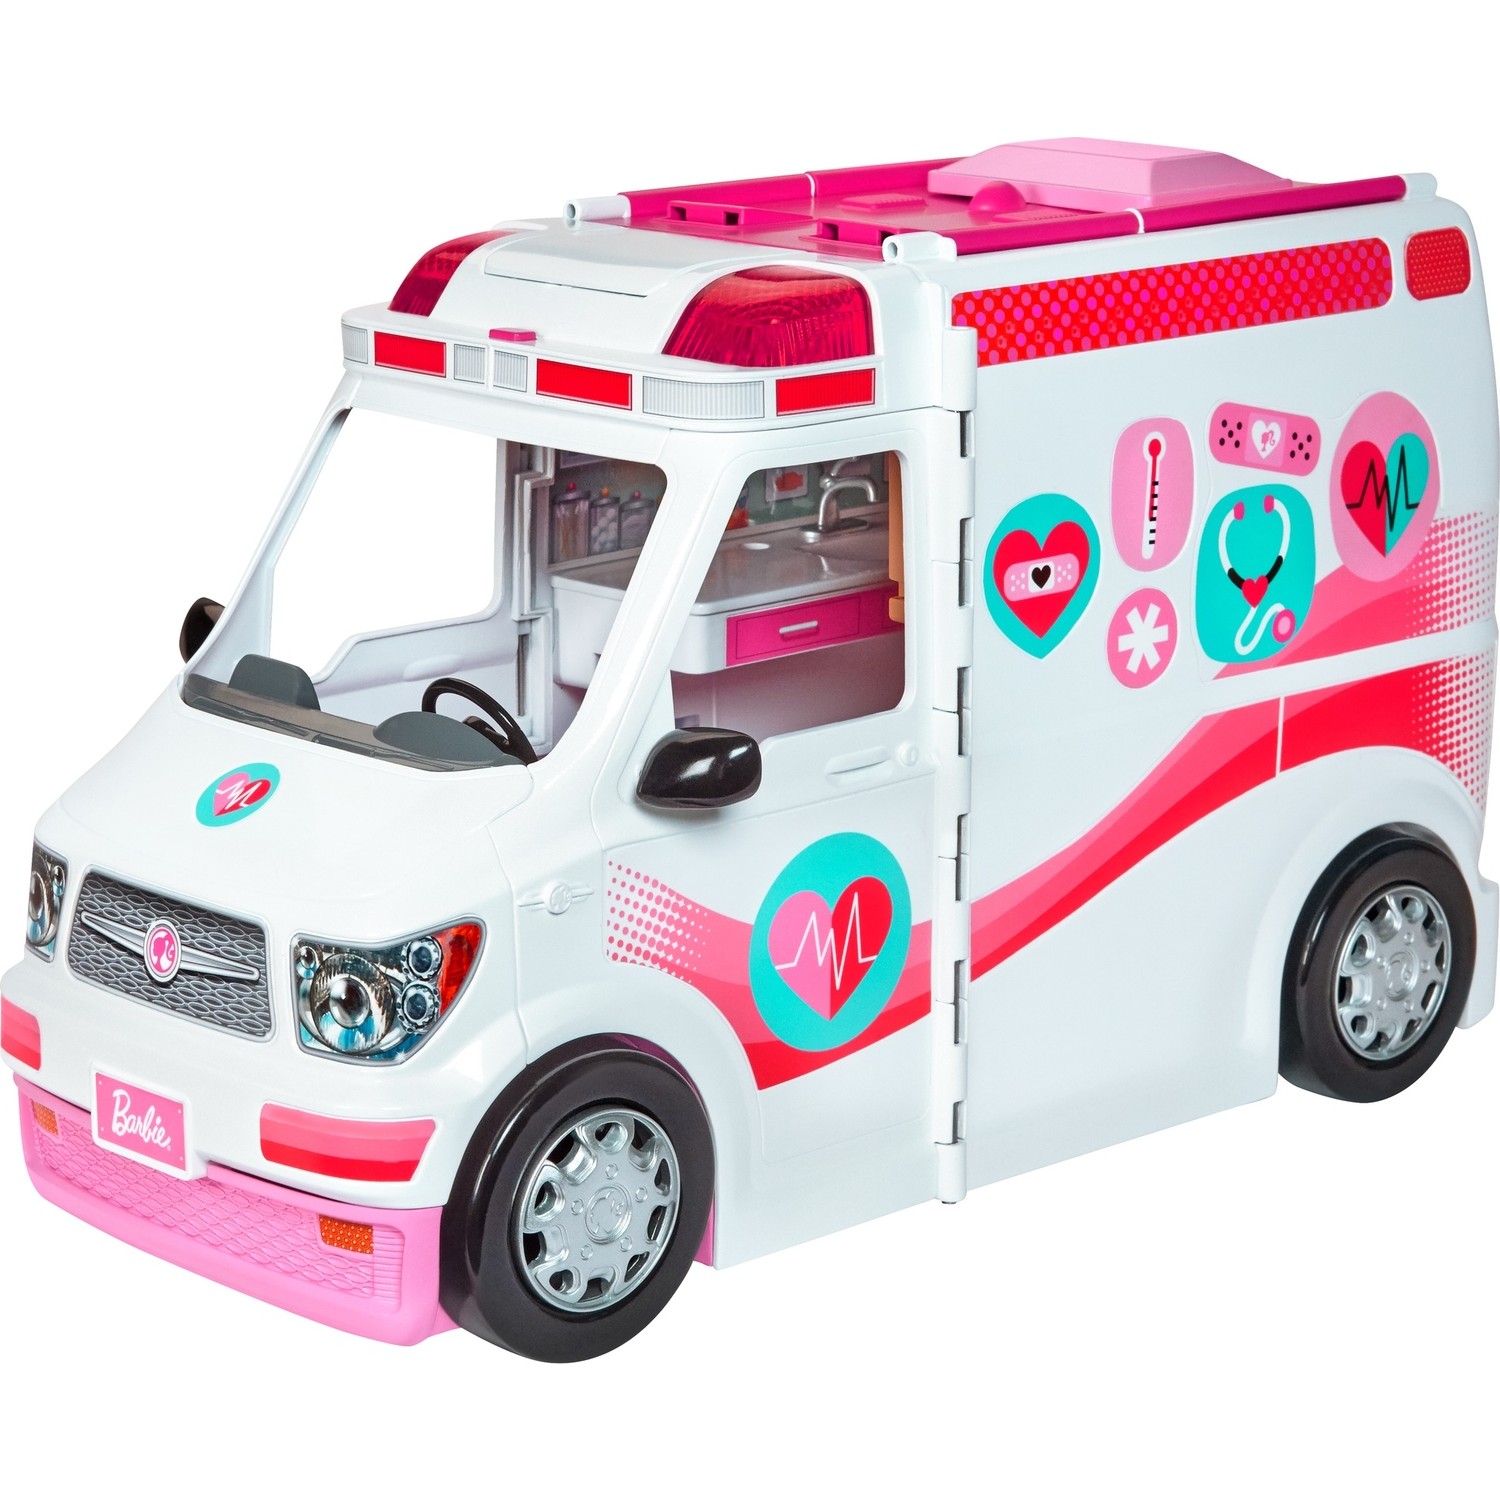 Машина скорой помощи Barbie со звуком и светом Frm19 магнитный пазл скорая помощь отделение скорой помощи больница на холодильник 27 x 18 см